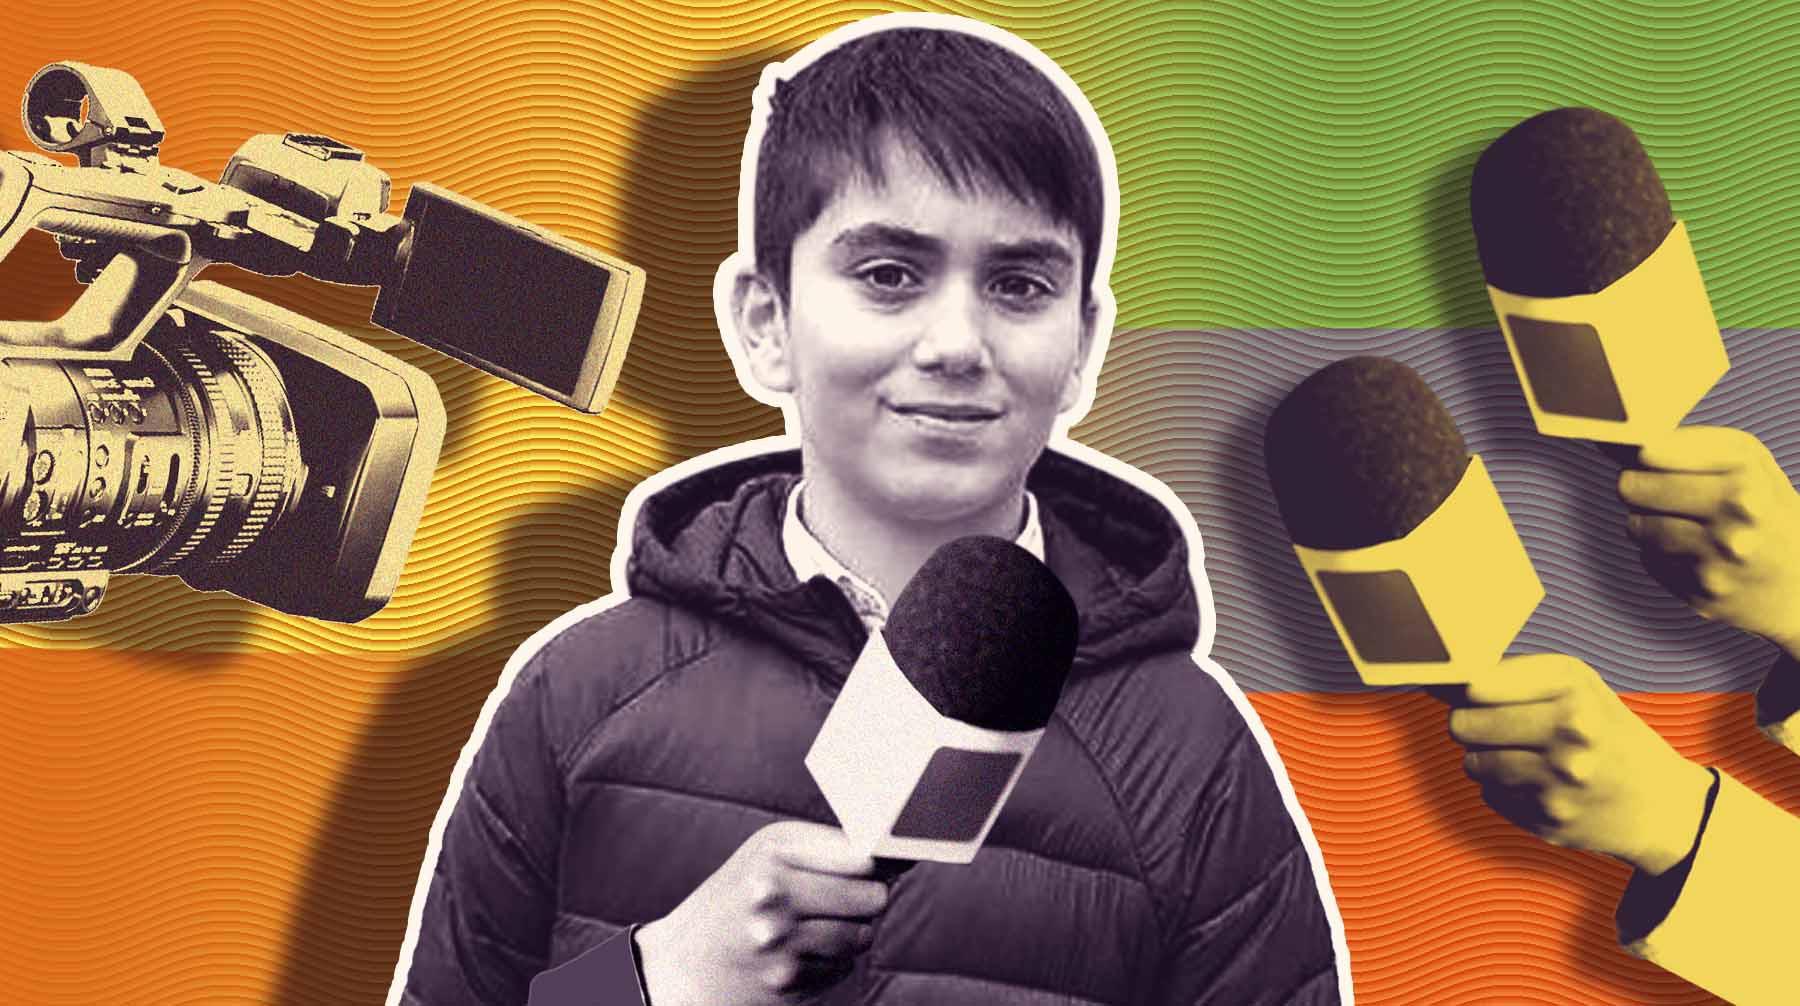 Dailystorm - «Не успеваю давать интервью федералам»: 13-летний помощник депутата Госдумы рассказал, как попасть в большую политику